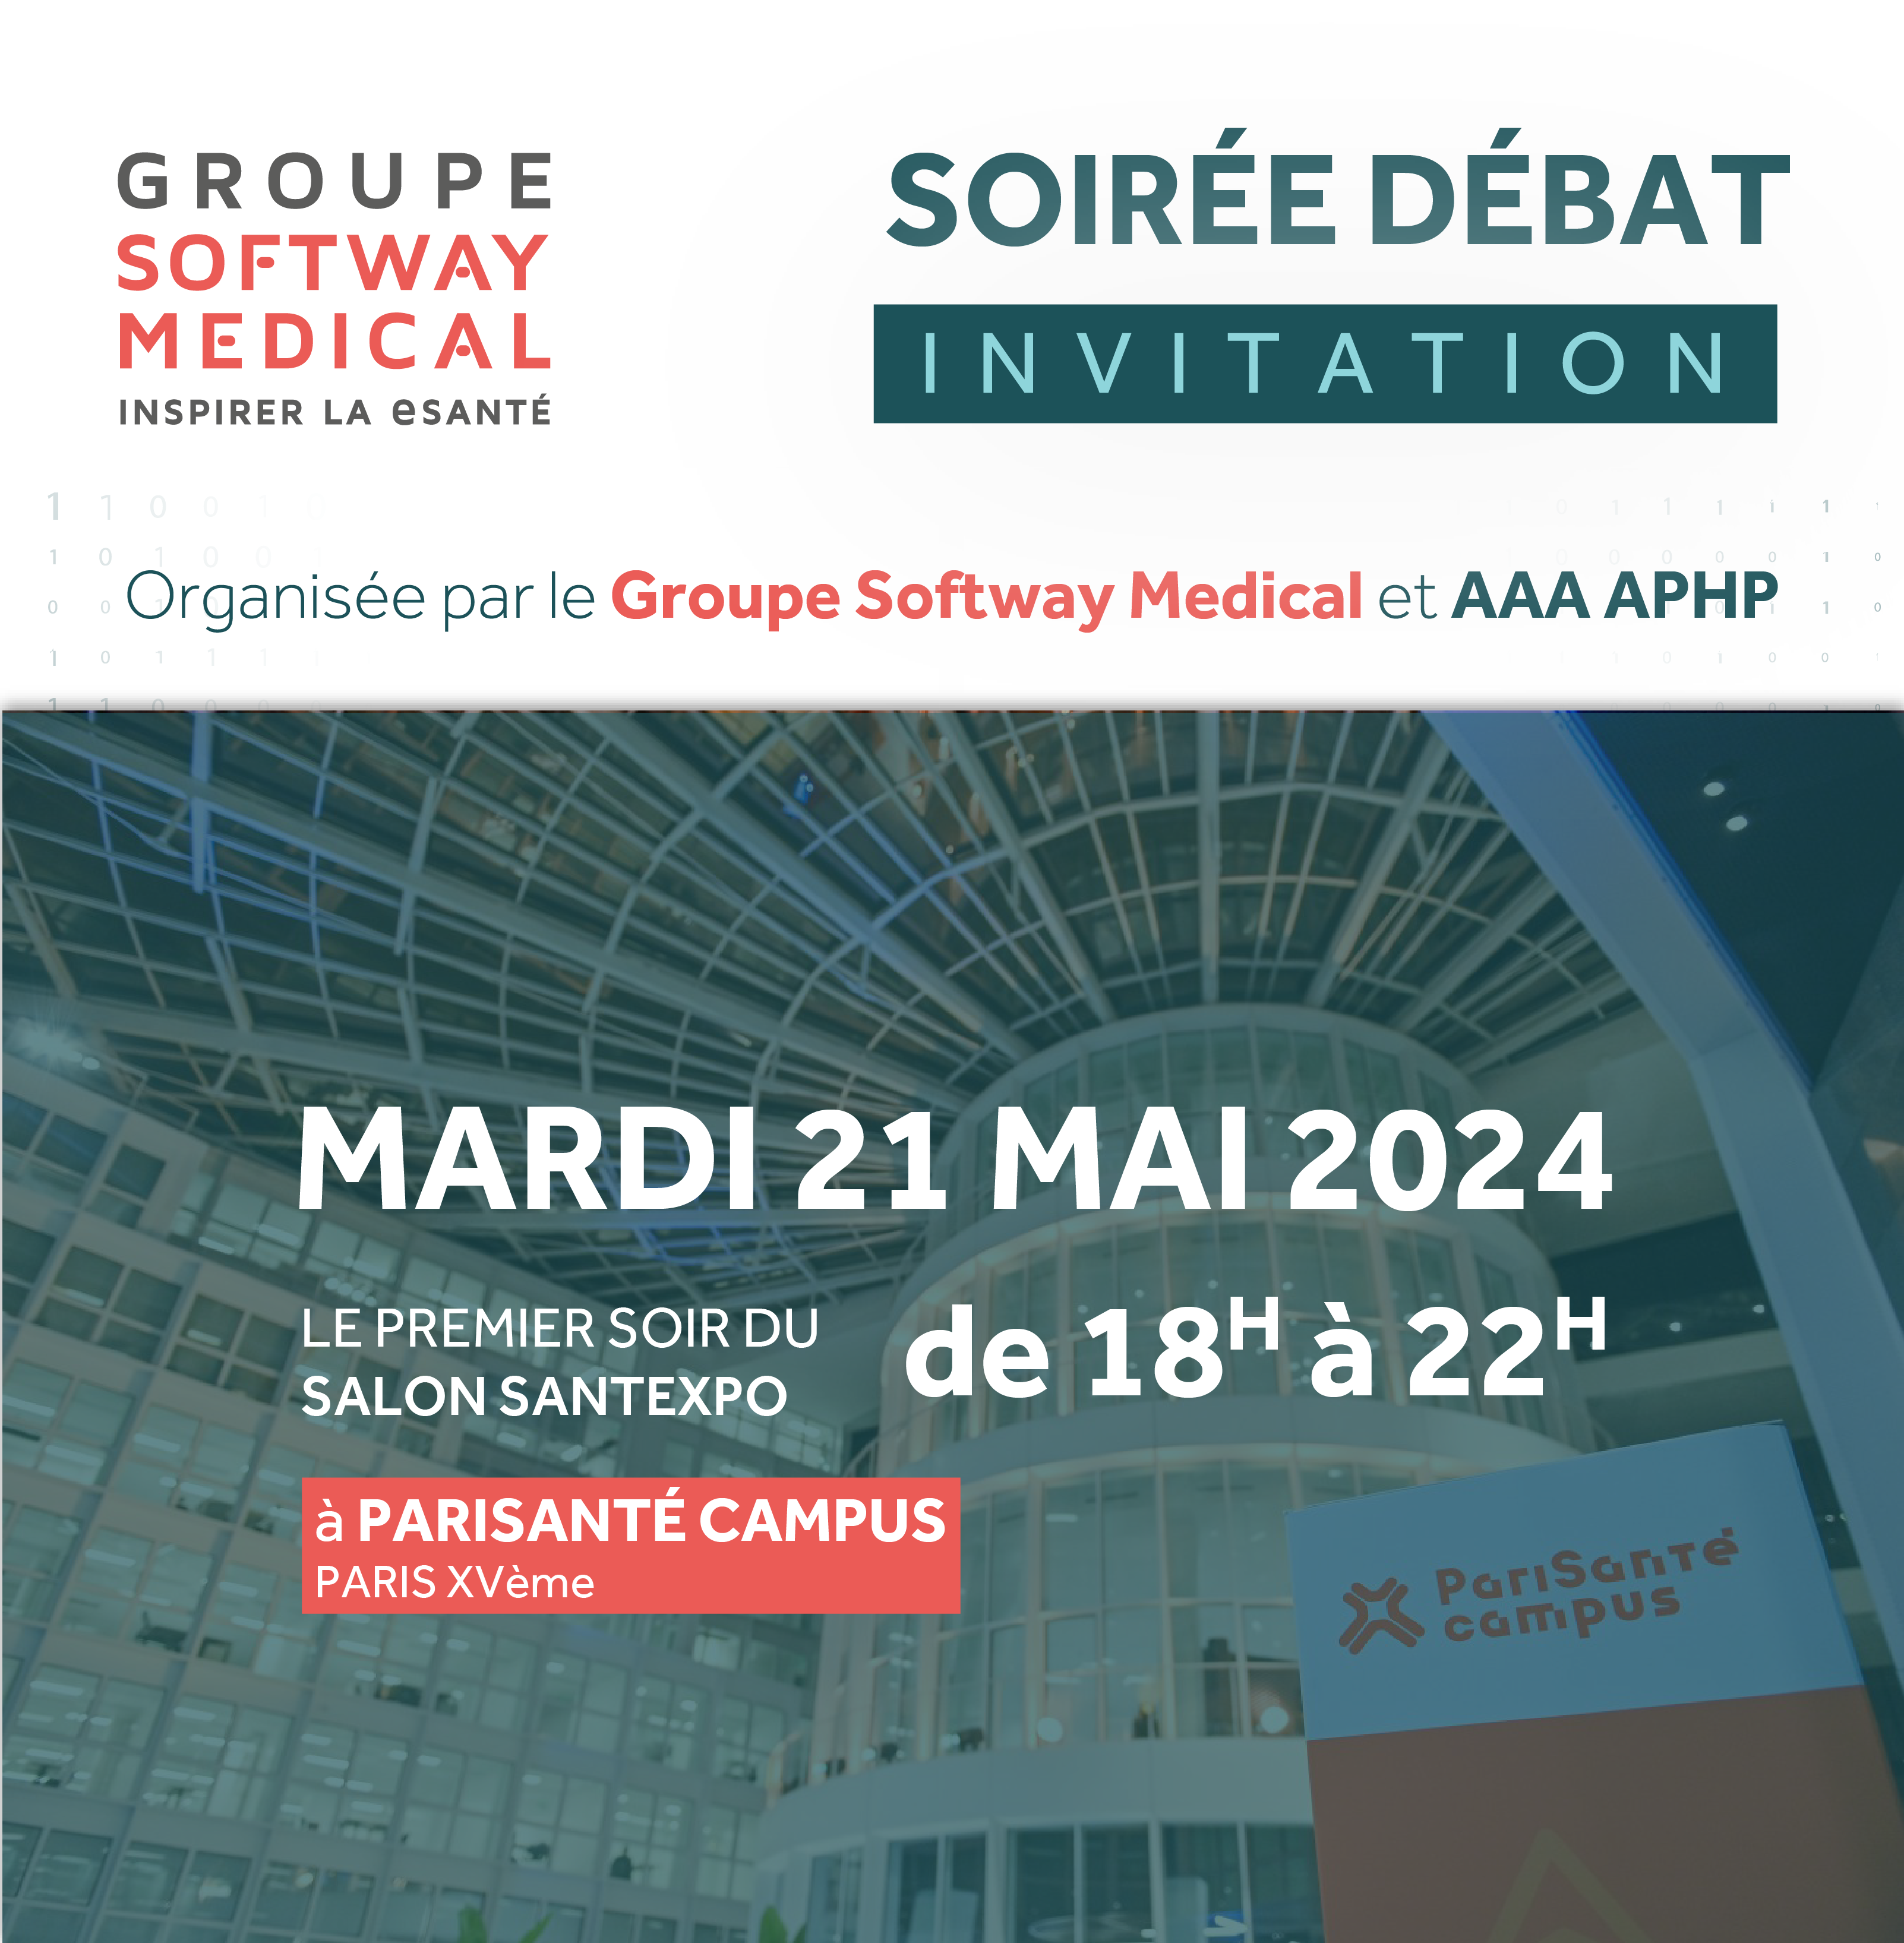 Soirée Débat 2024 : Save the date !